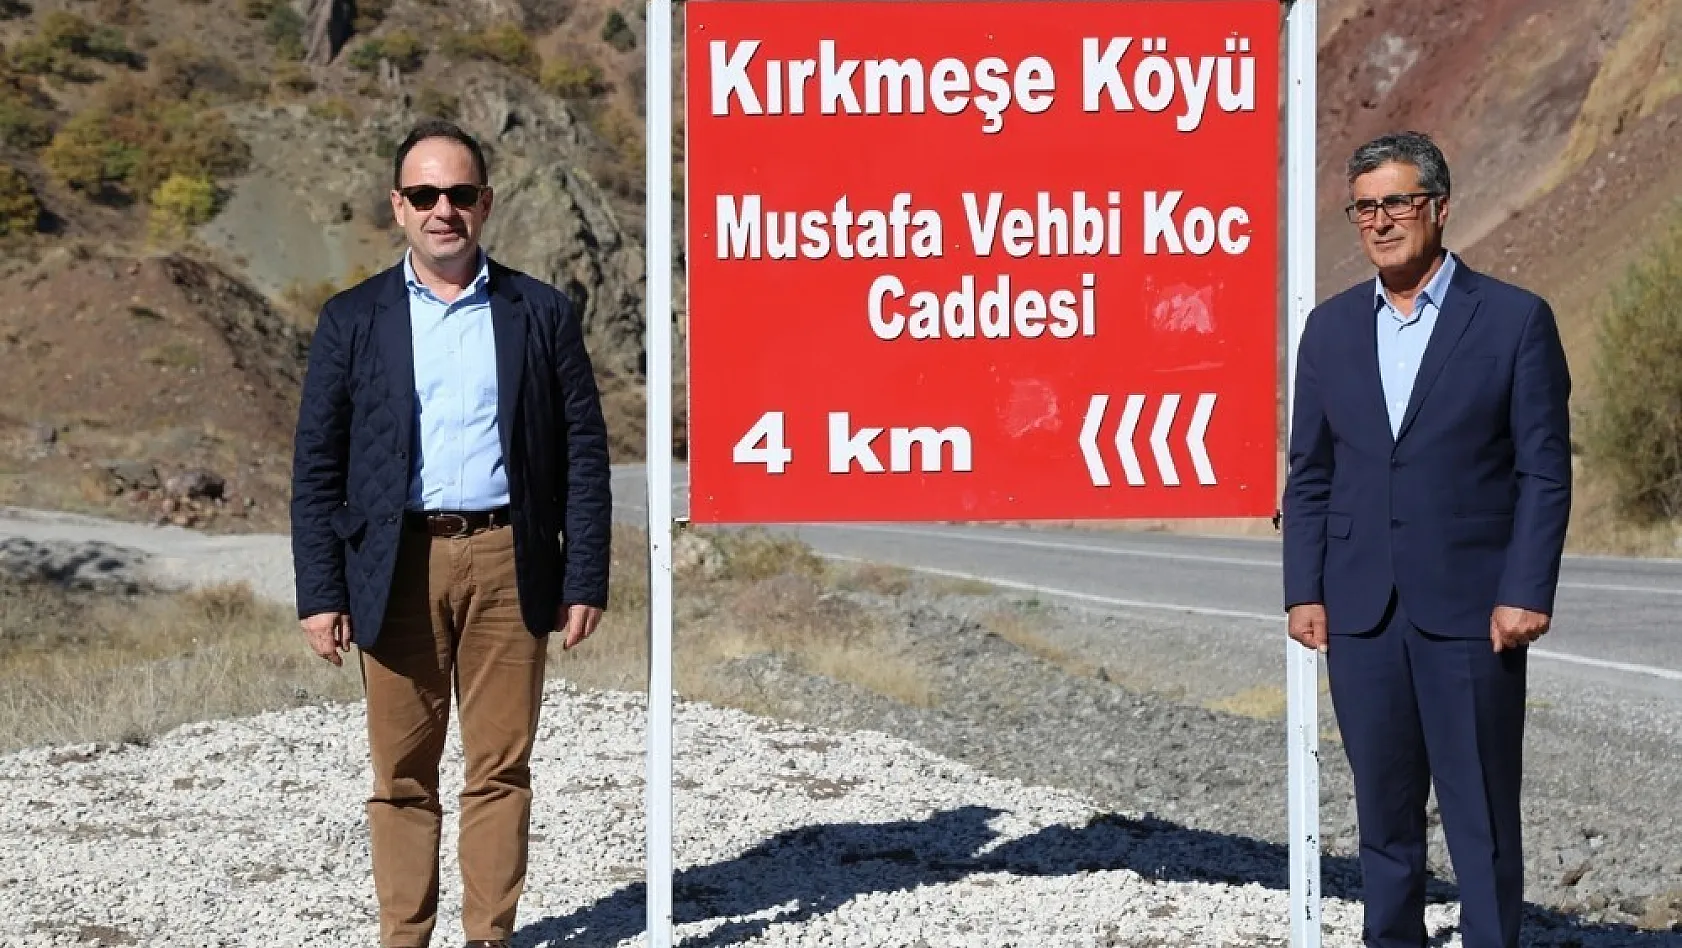 Köydeki bir caddeye 'Mustafa Vehbi Koç'un' ismi verildi, aile teşekkür için temsilci gönderdi 